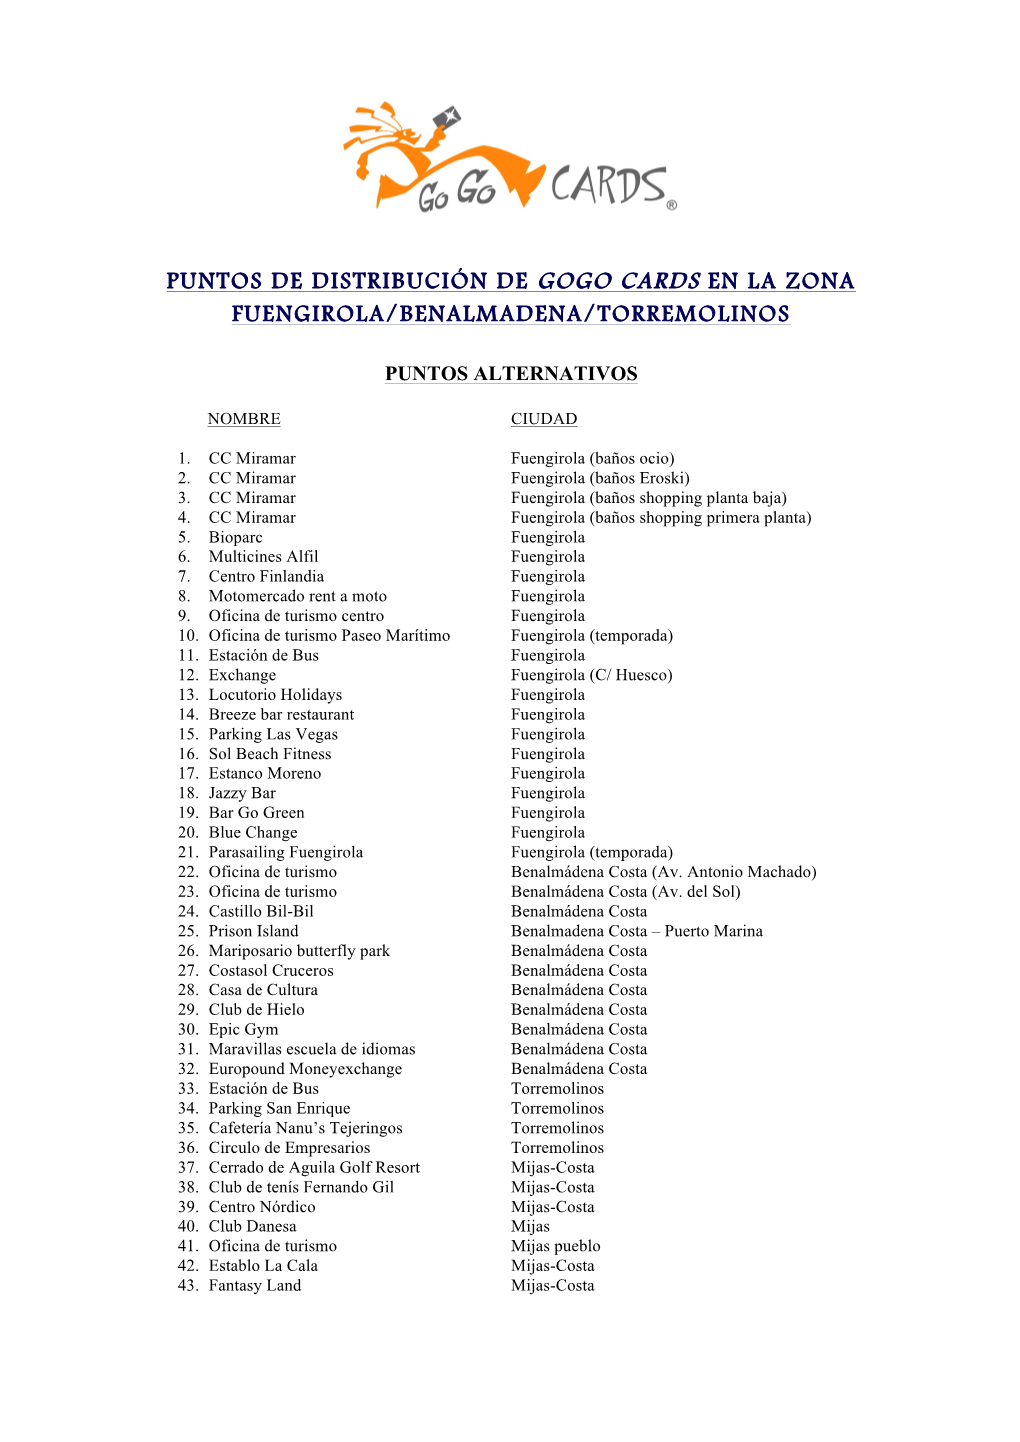 Puntos De Distribución De Gogo Cards En La Zona Fuengirola/Benalmadena/Torremolinos